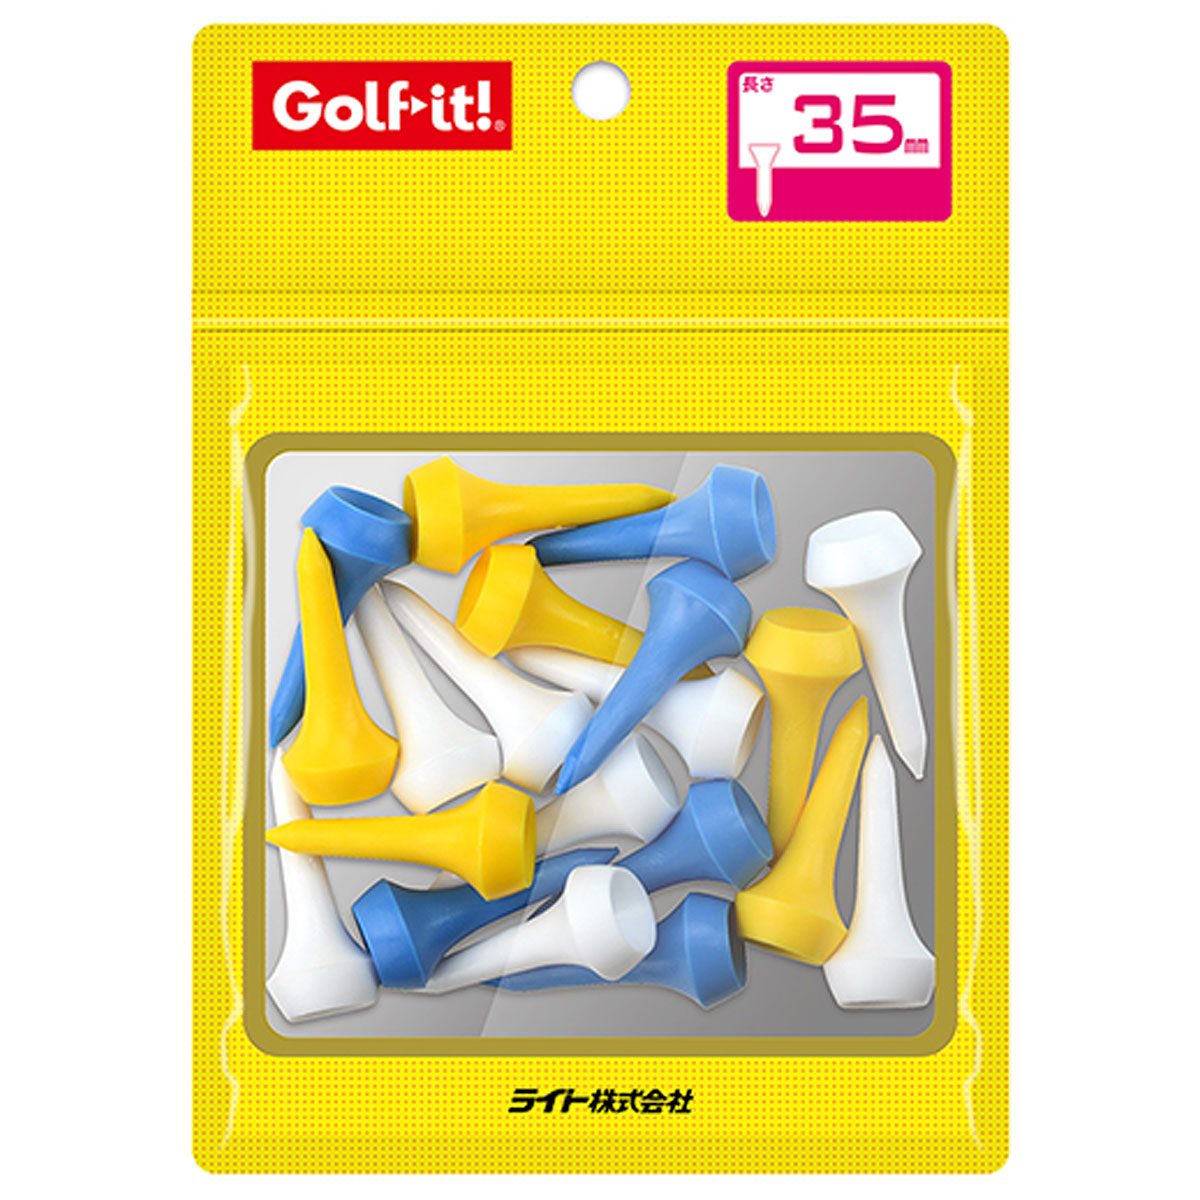 ゴルフ規則に適合 Golfit ゴルフイット LiTE ライト 日本正規品 全長35mm 20本入 T-532 値引き シェルパックアイアンティー35 爆買い新作 あす楽対応